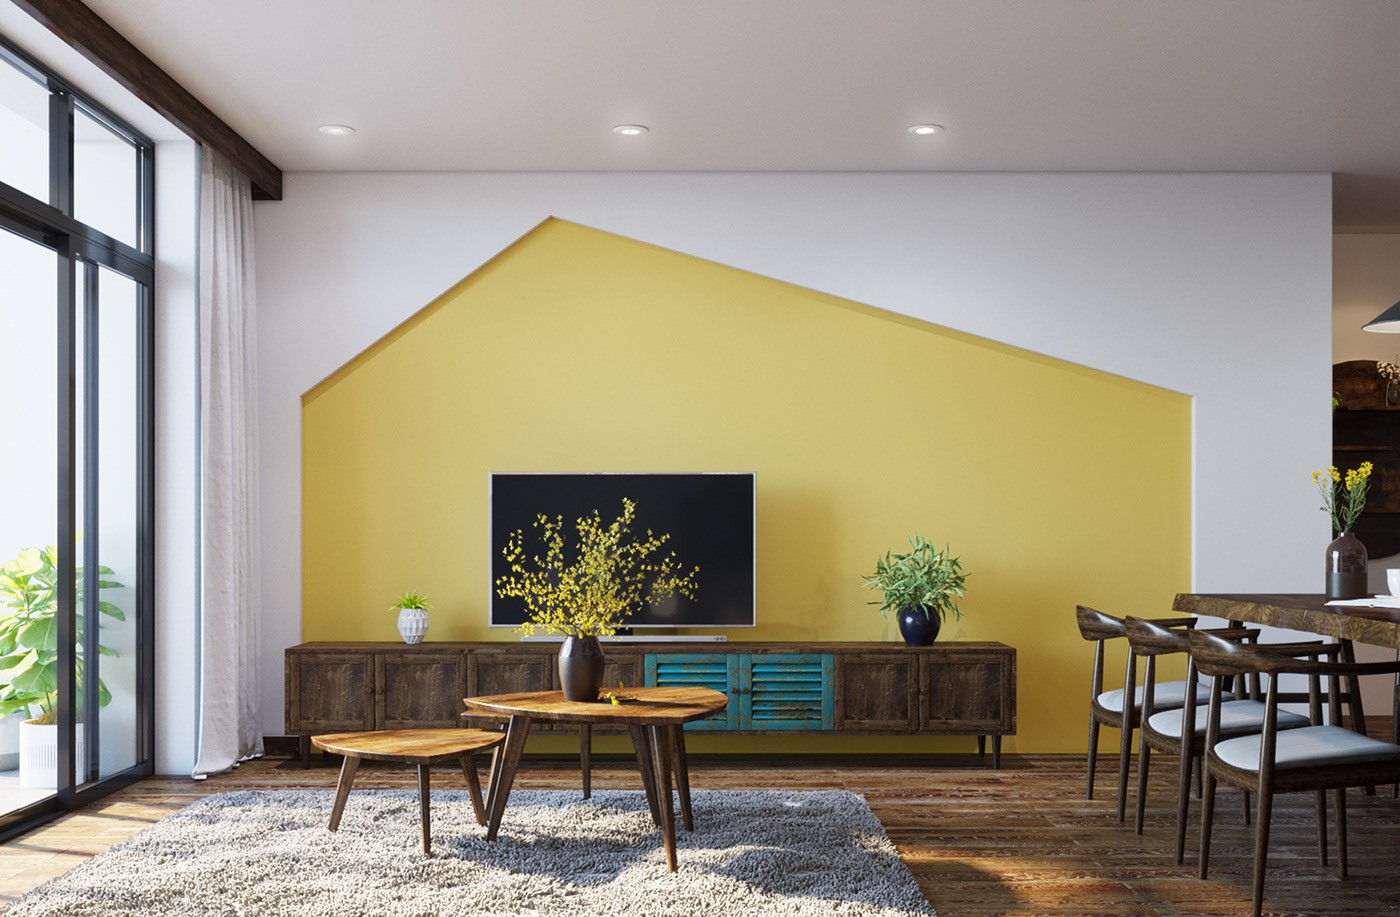 Hình ảnh phòng khách với tủ kệ tivi bằng gỗ, tường phía sau sơn vàng bắt mắt, lọ hoa trang trí, thảm trải trên sàn gỗ, cửa sổ kính